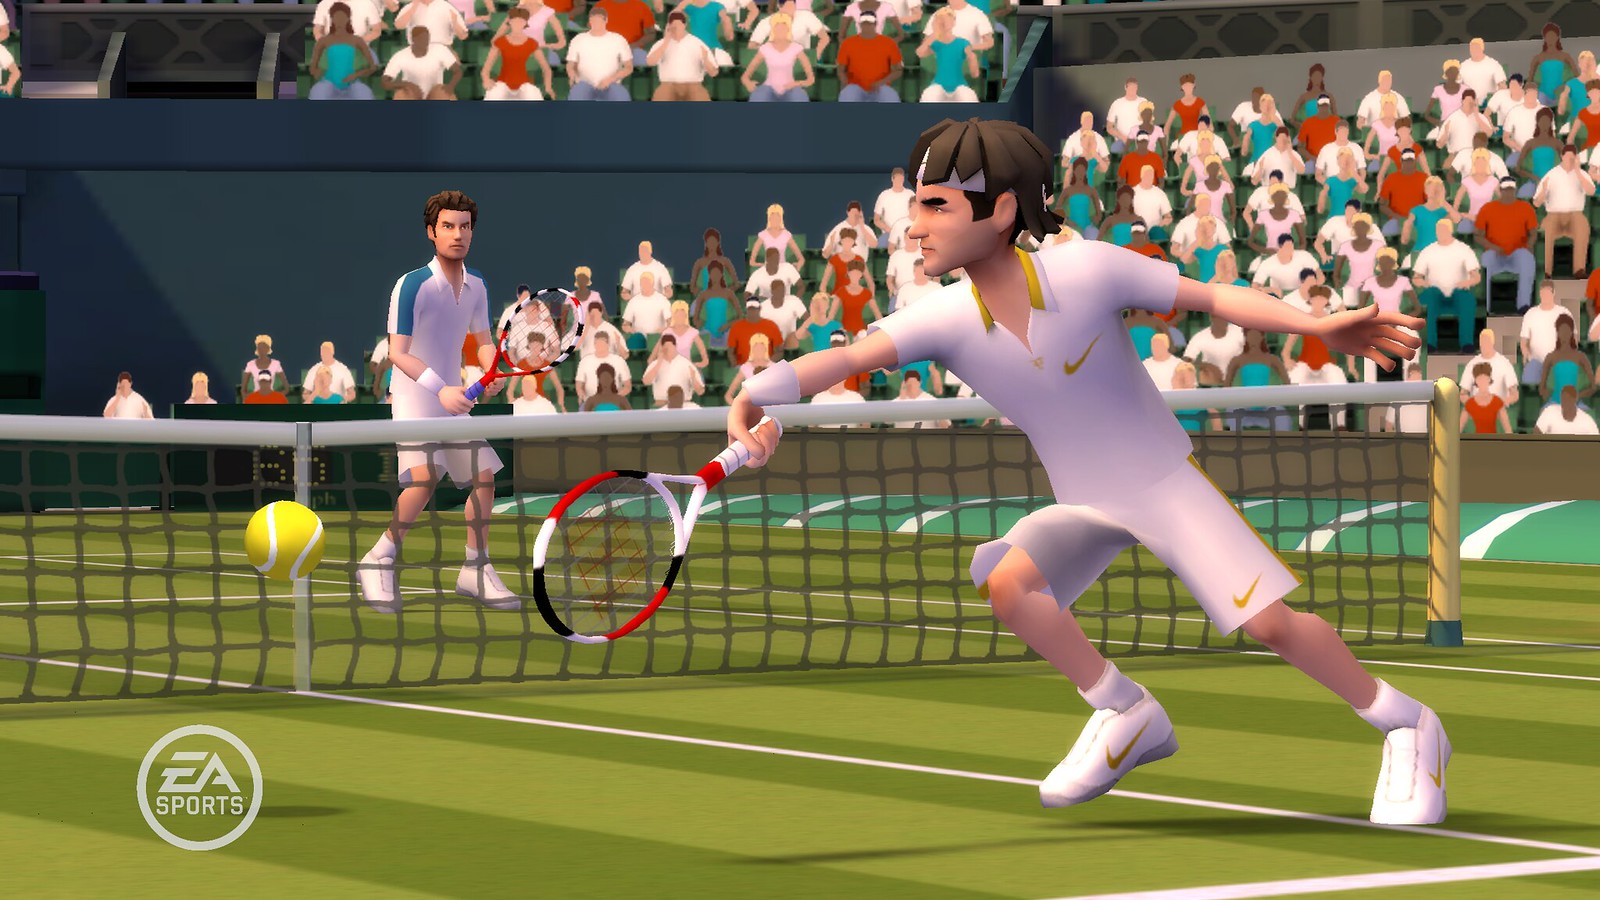 Новая теннисная игра. Игра в теннис. Гранд-слэм теннис. Wii Tennis. EA Sports Grand Slam Tennis.